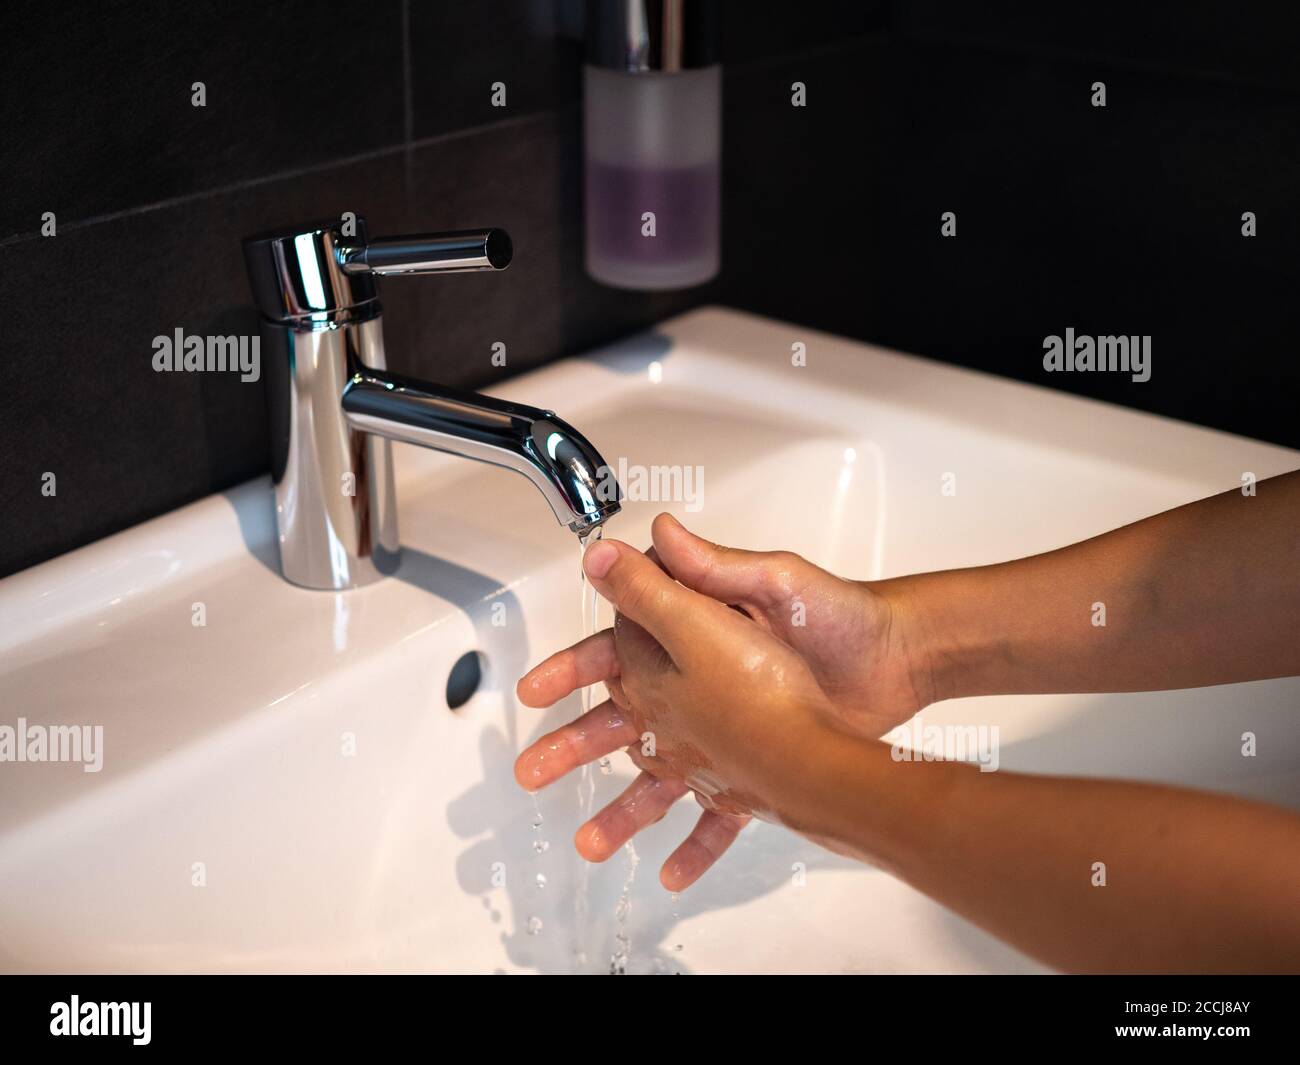 Lavado de manos higiene personal niño lavarse las manos frotar el jabón durante 20 segundos siguiendo los pasos, limpiar las muñecas y enjuagarse bajo el agua en el baño de la casa. Foto de stock